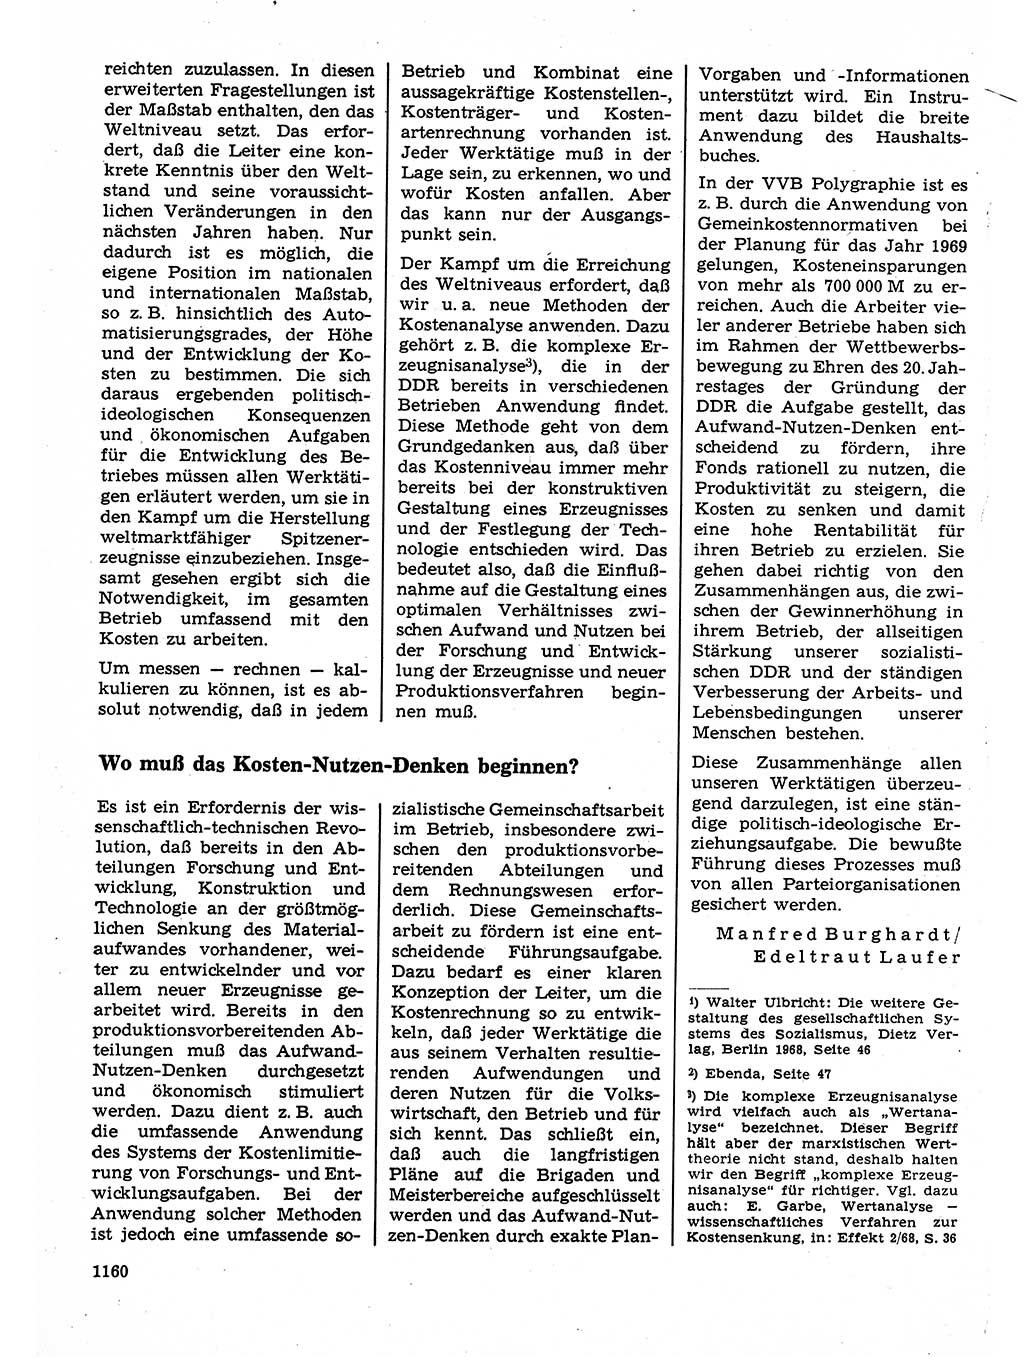 Neuer Weg (NW), Organ des Zentralkomitees (ZK) der SED (Sozialistische Einheitspartei Deutschlands) für Fragen des Parteilebens, 23. Jahrgang [Deutsche Demokratische Republik (DDR)] 1968, Seite 1144 (NW ZK SED DDR 1968, S. 1144)